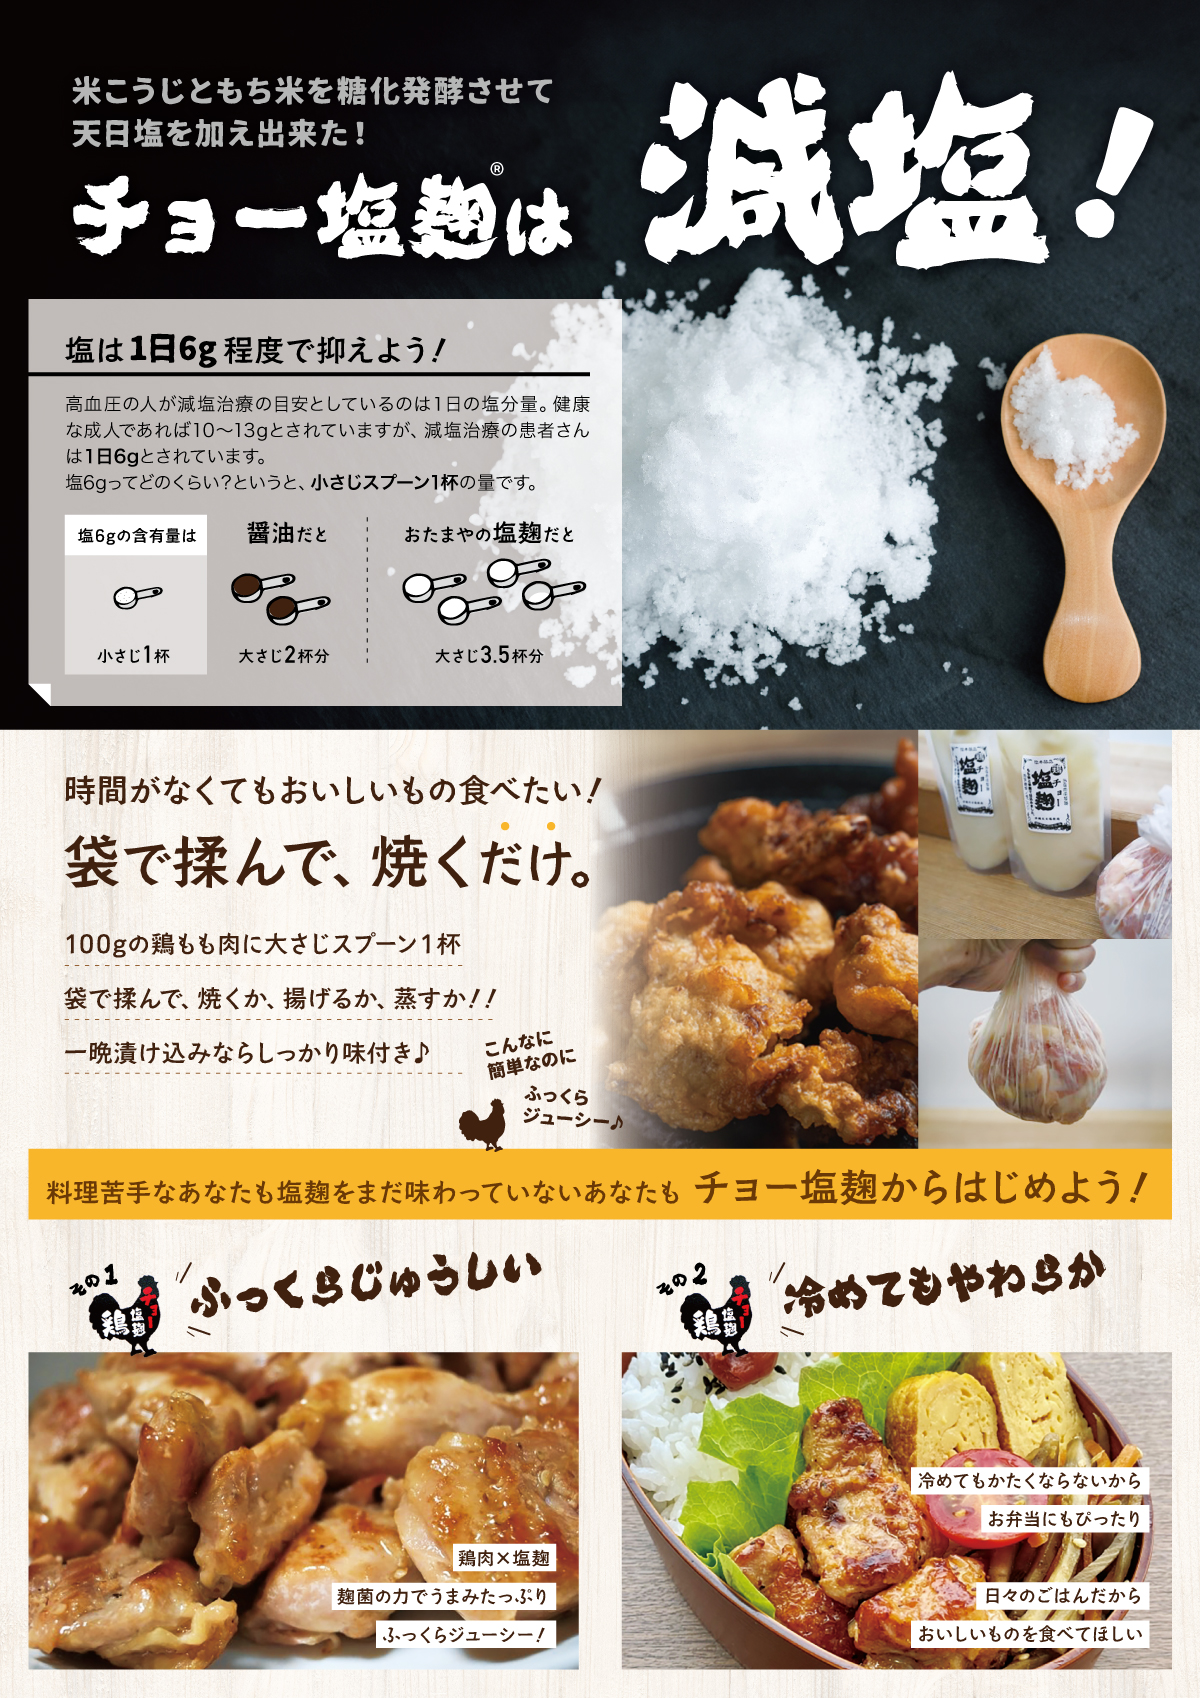 チョー塩麹® 新商品 直営店からの特別販促